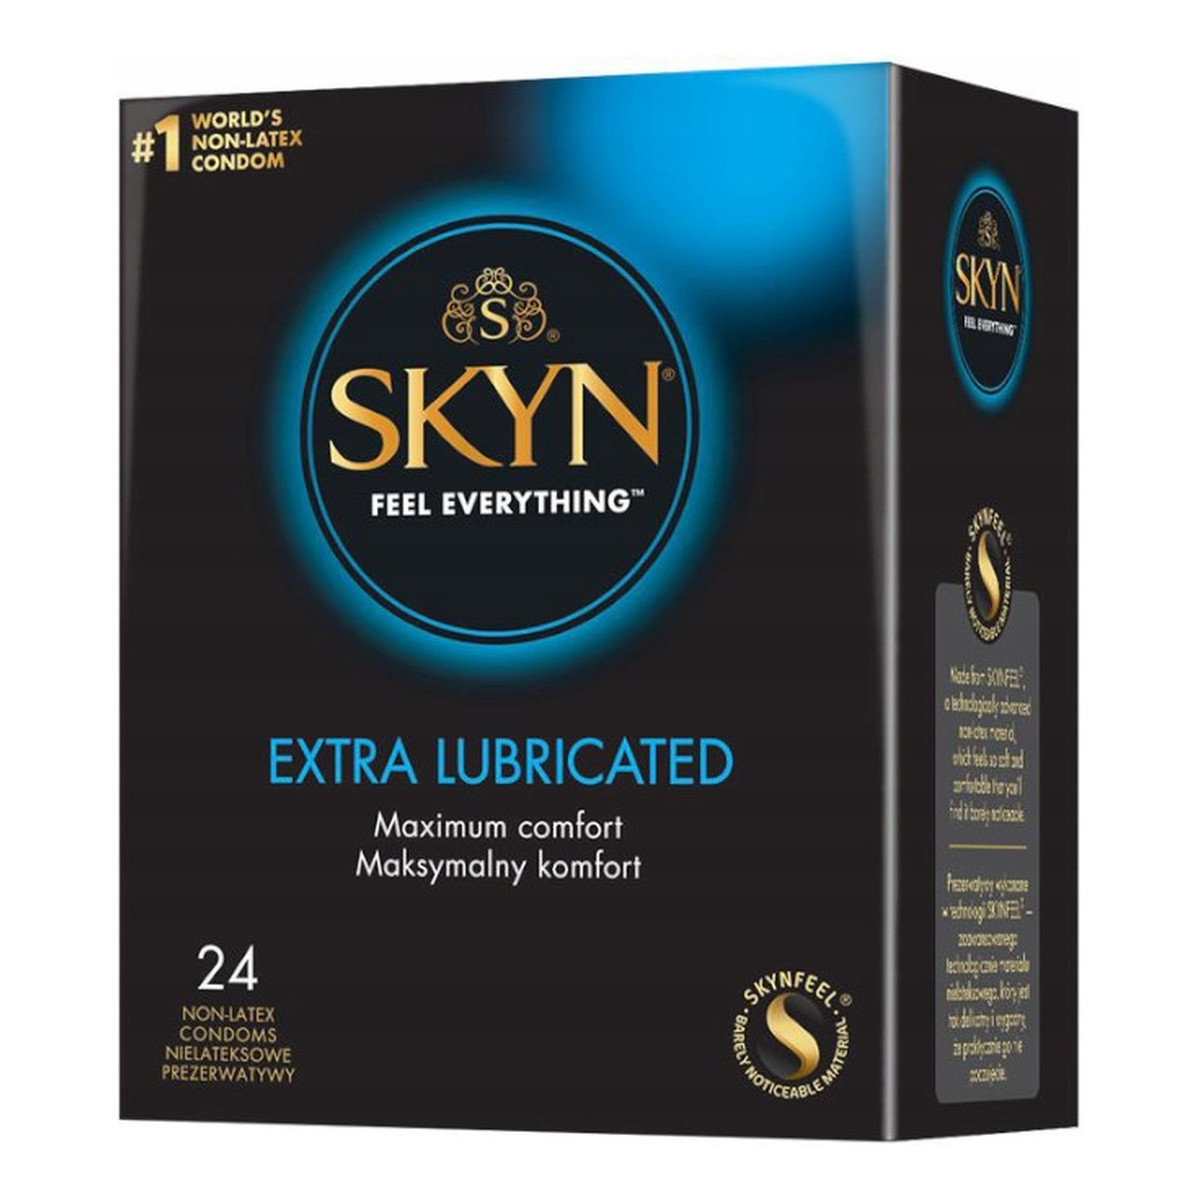 Unimil Skyn extra lubricated nielateksowe prezerwatywy 24szt